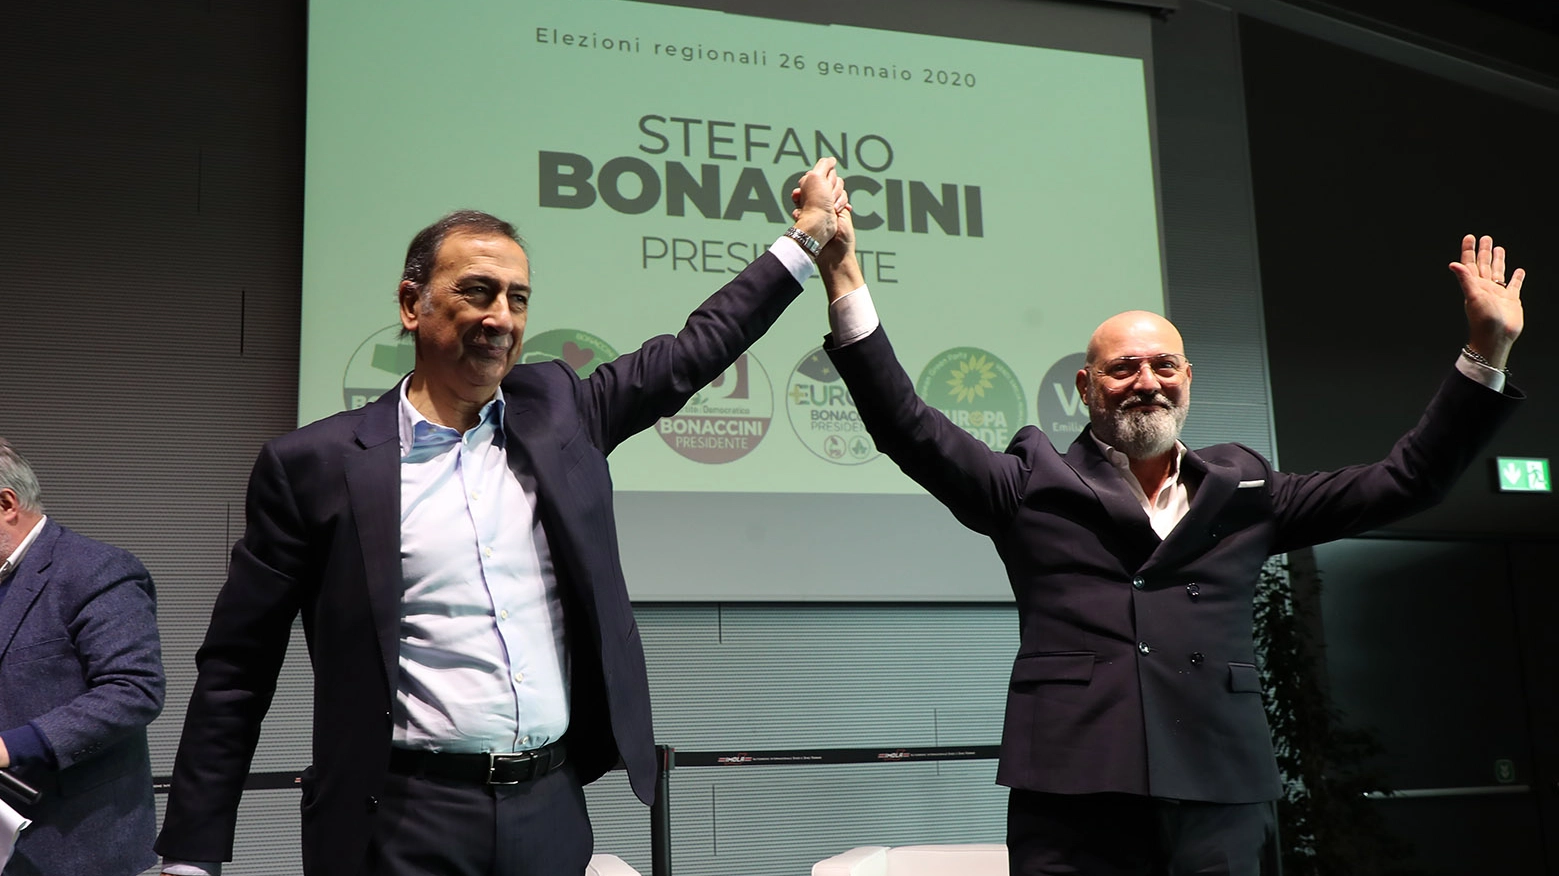 Stefano Bonaccini con il sindaco di Milano, Giuseppe Sala (Isolapress)